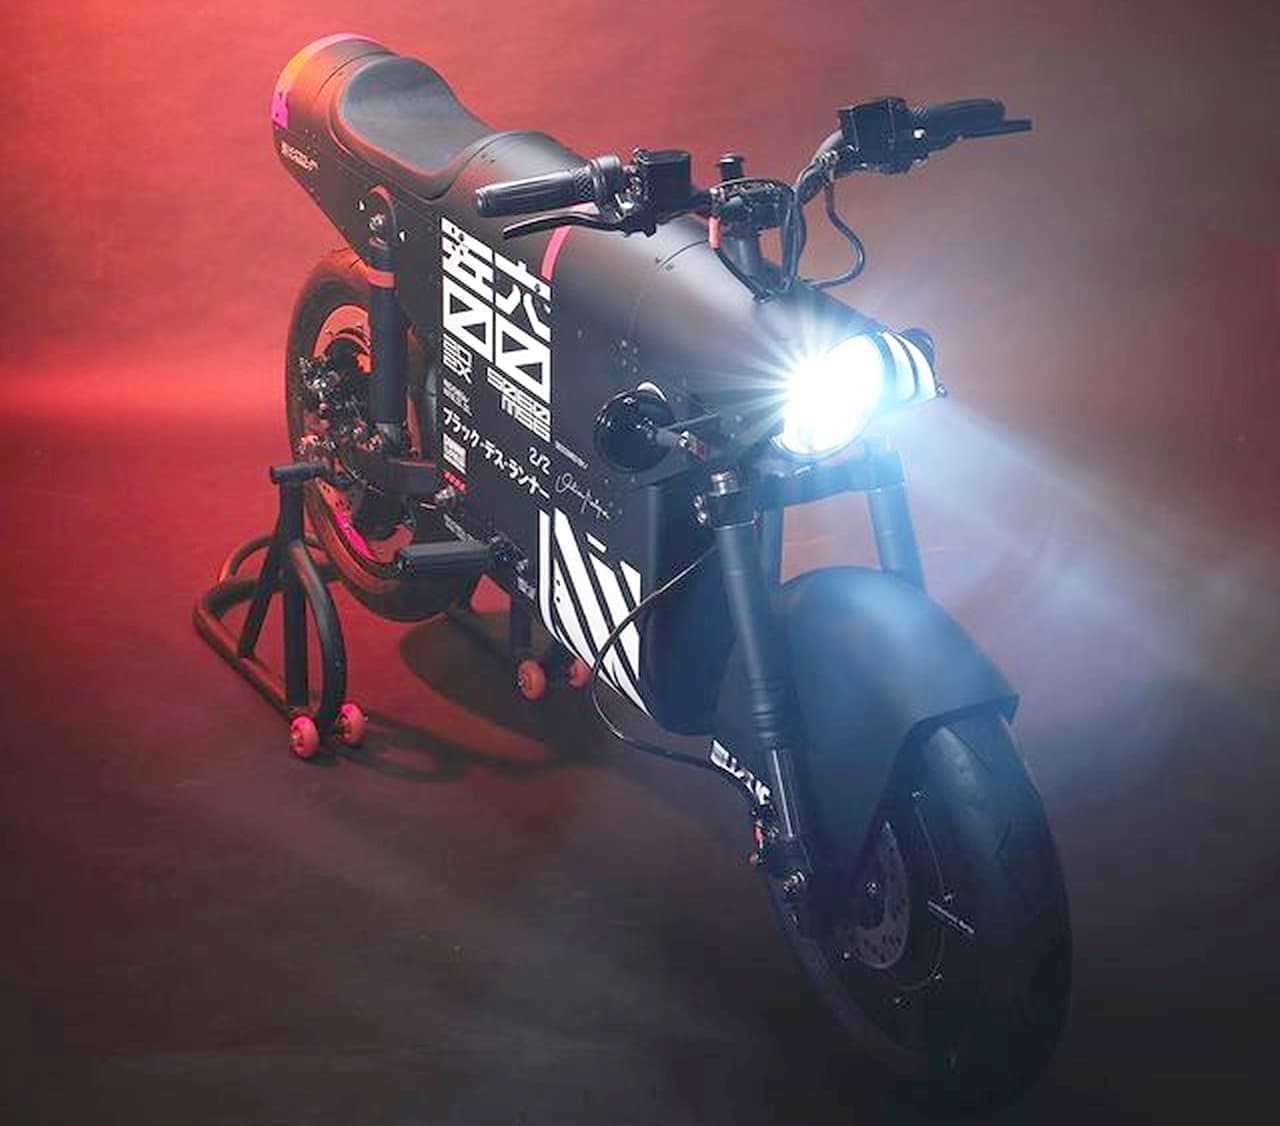 日本のアニメ 戦闘機 モビリティの未来を開発キーワードとした電動バイク「EV.500」が「EV-1K/56」となって予約受付開始